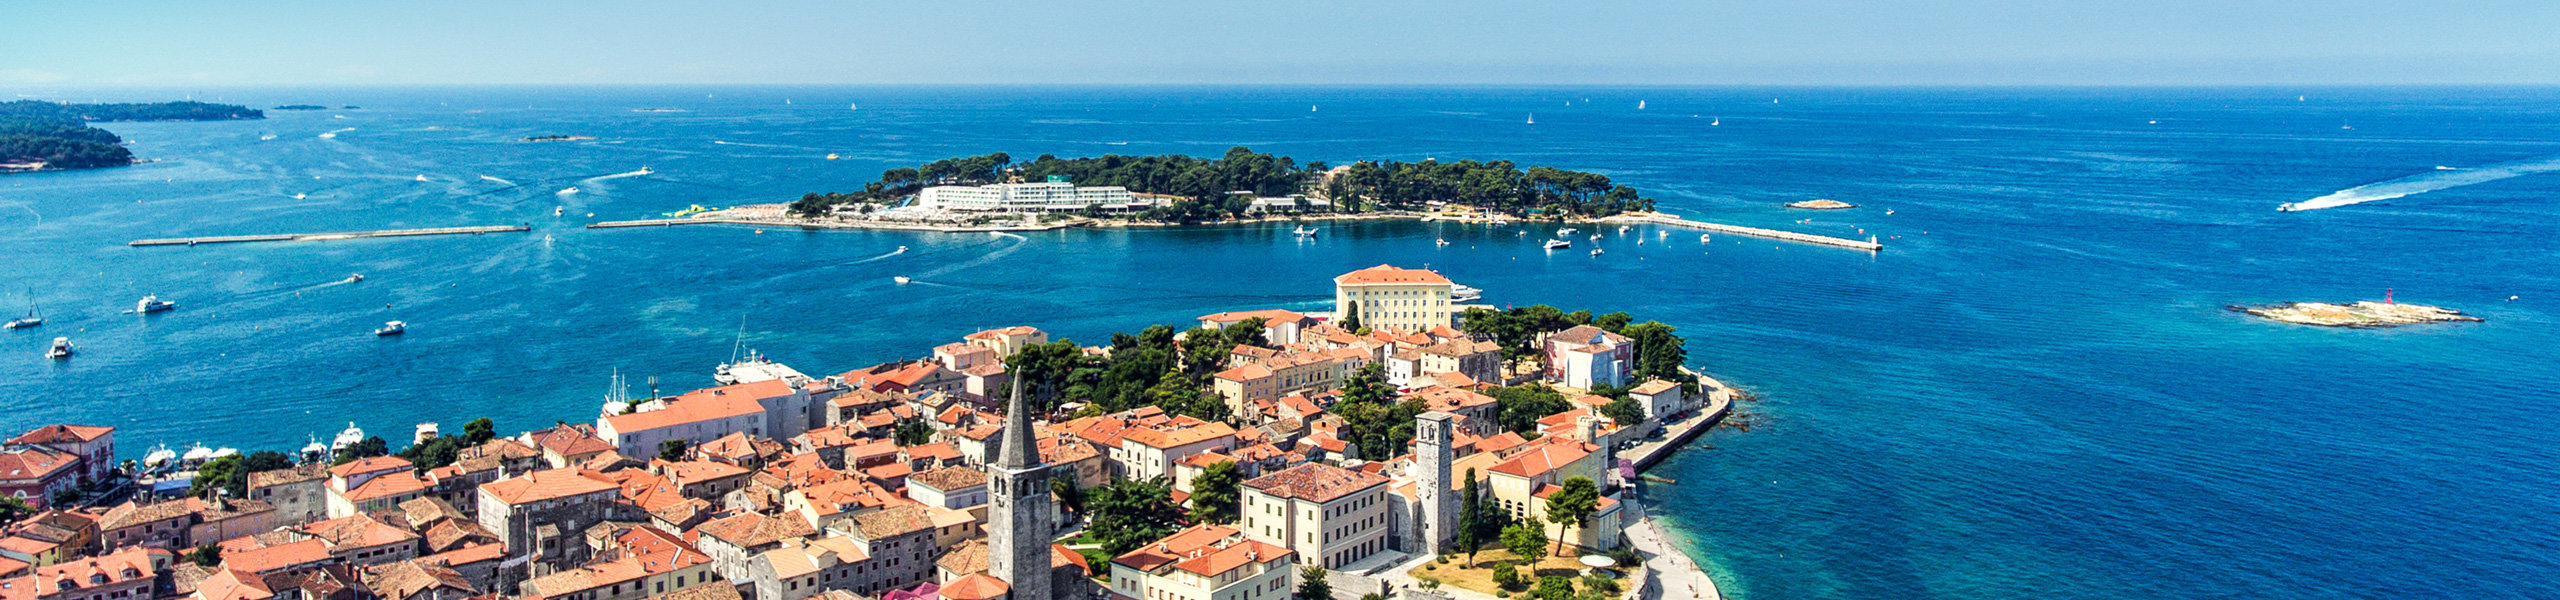 Luftansicht des Kroatischen Ortes Porec und im Hintergrund das blaue Meer